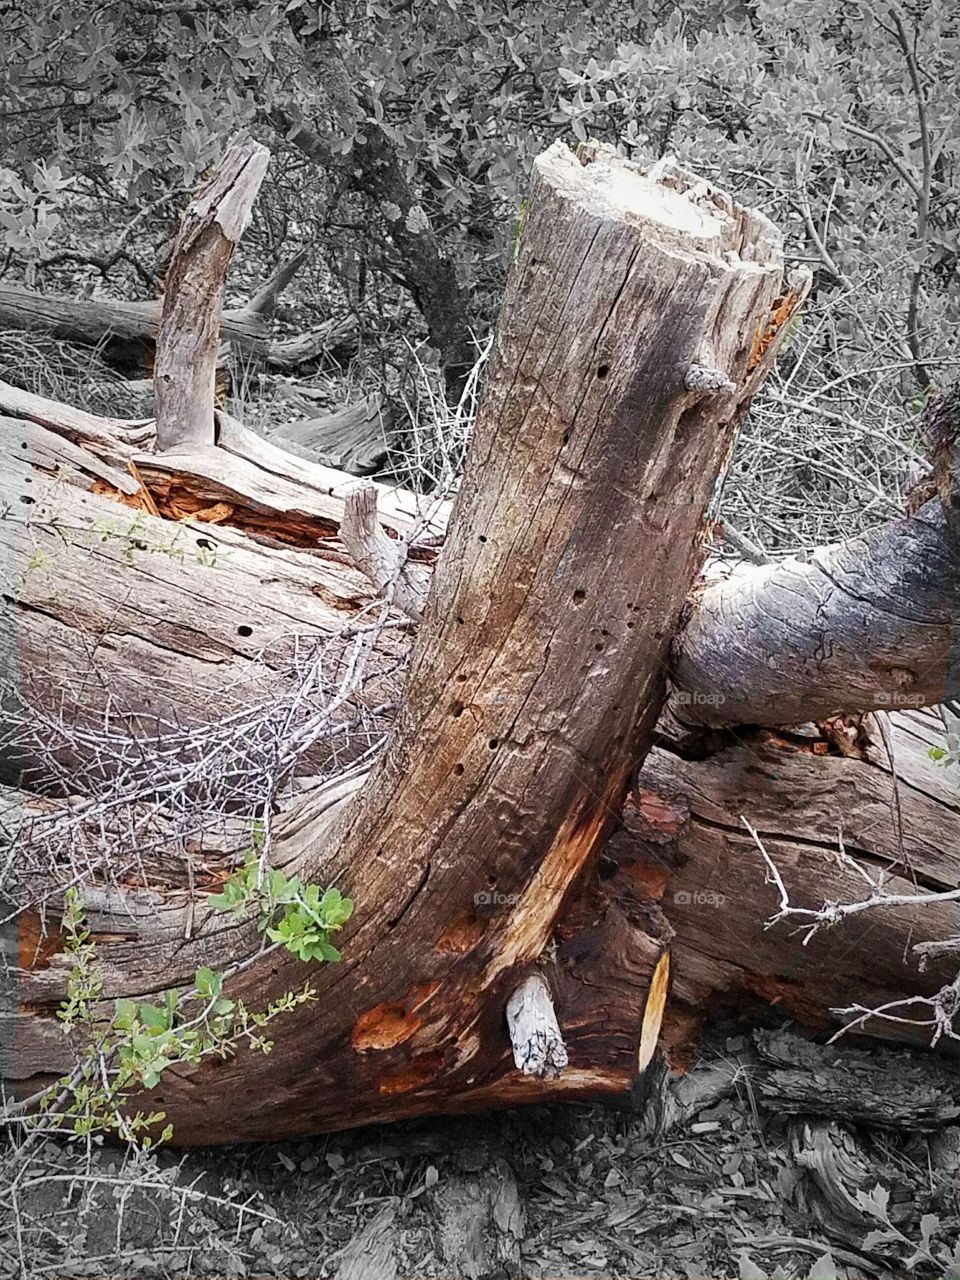 Dead logs